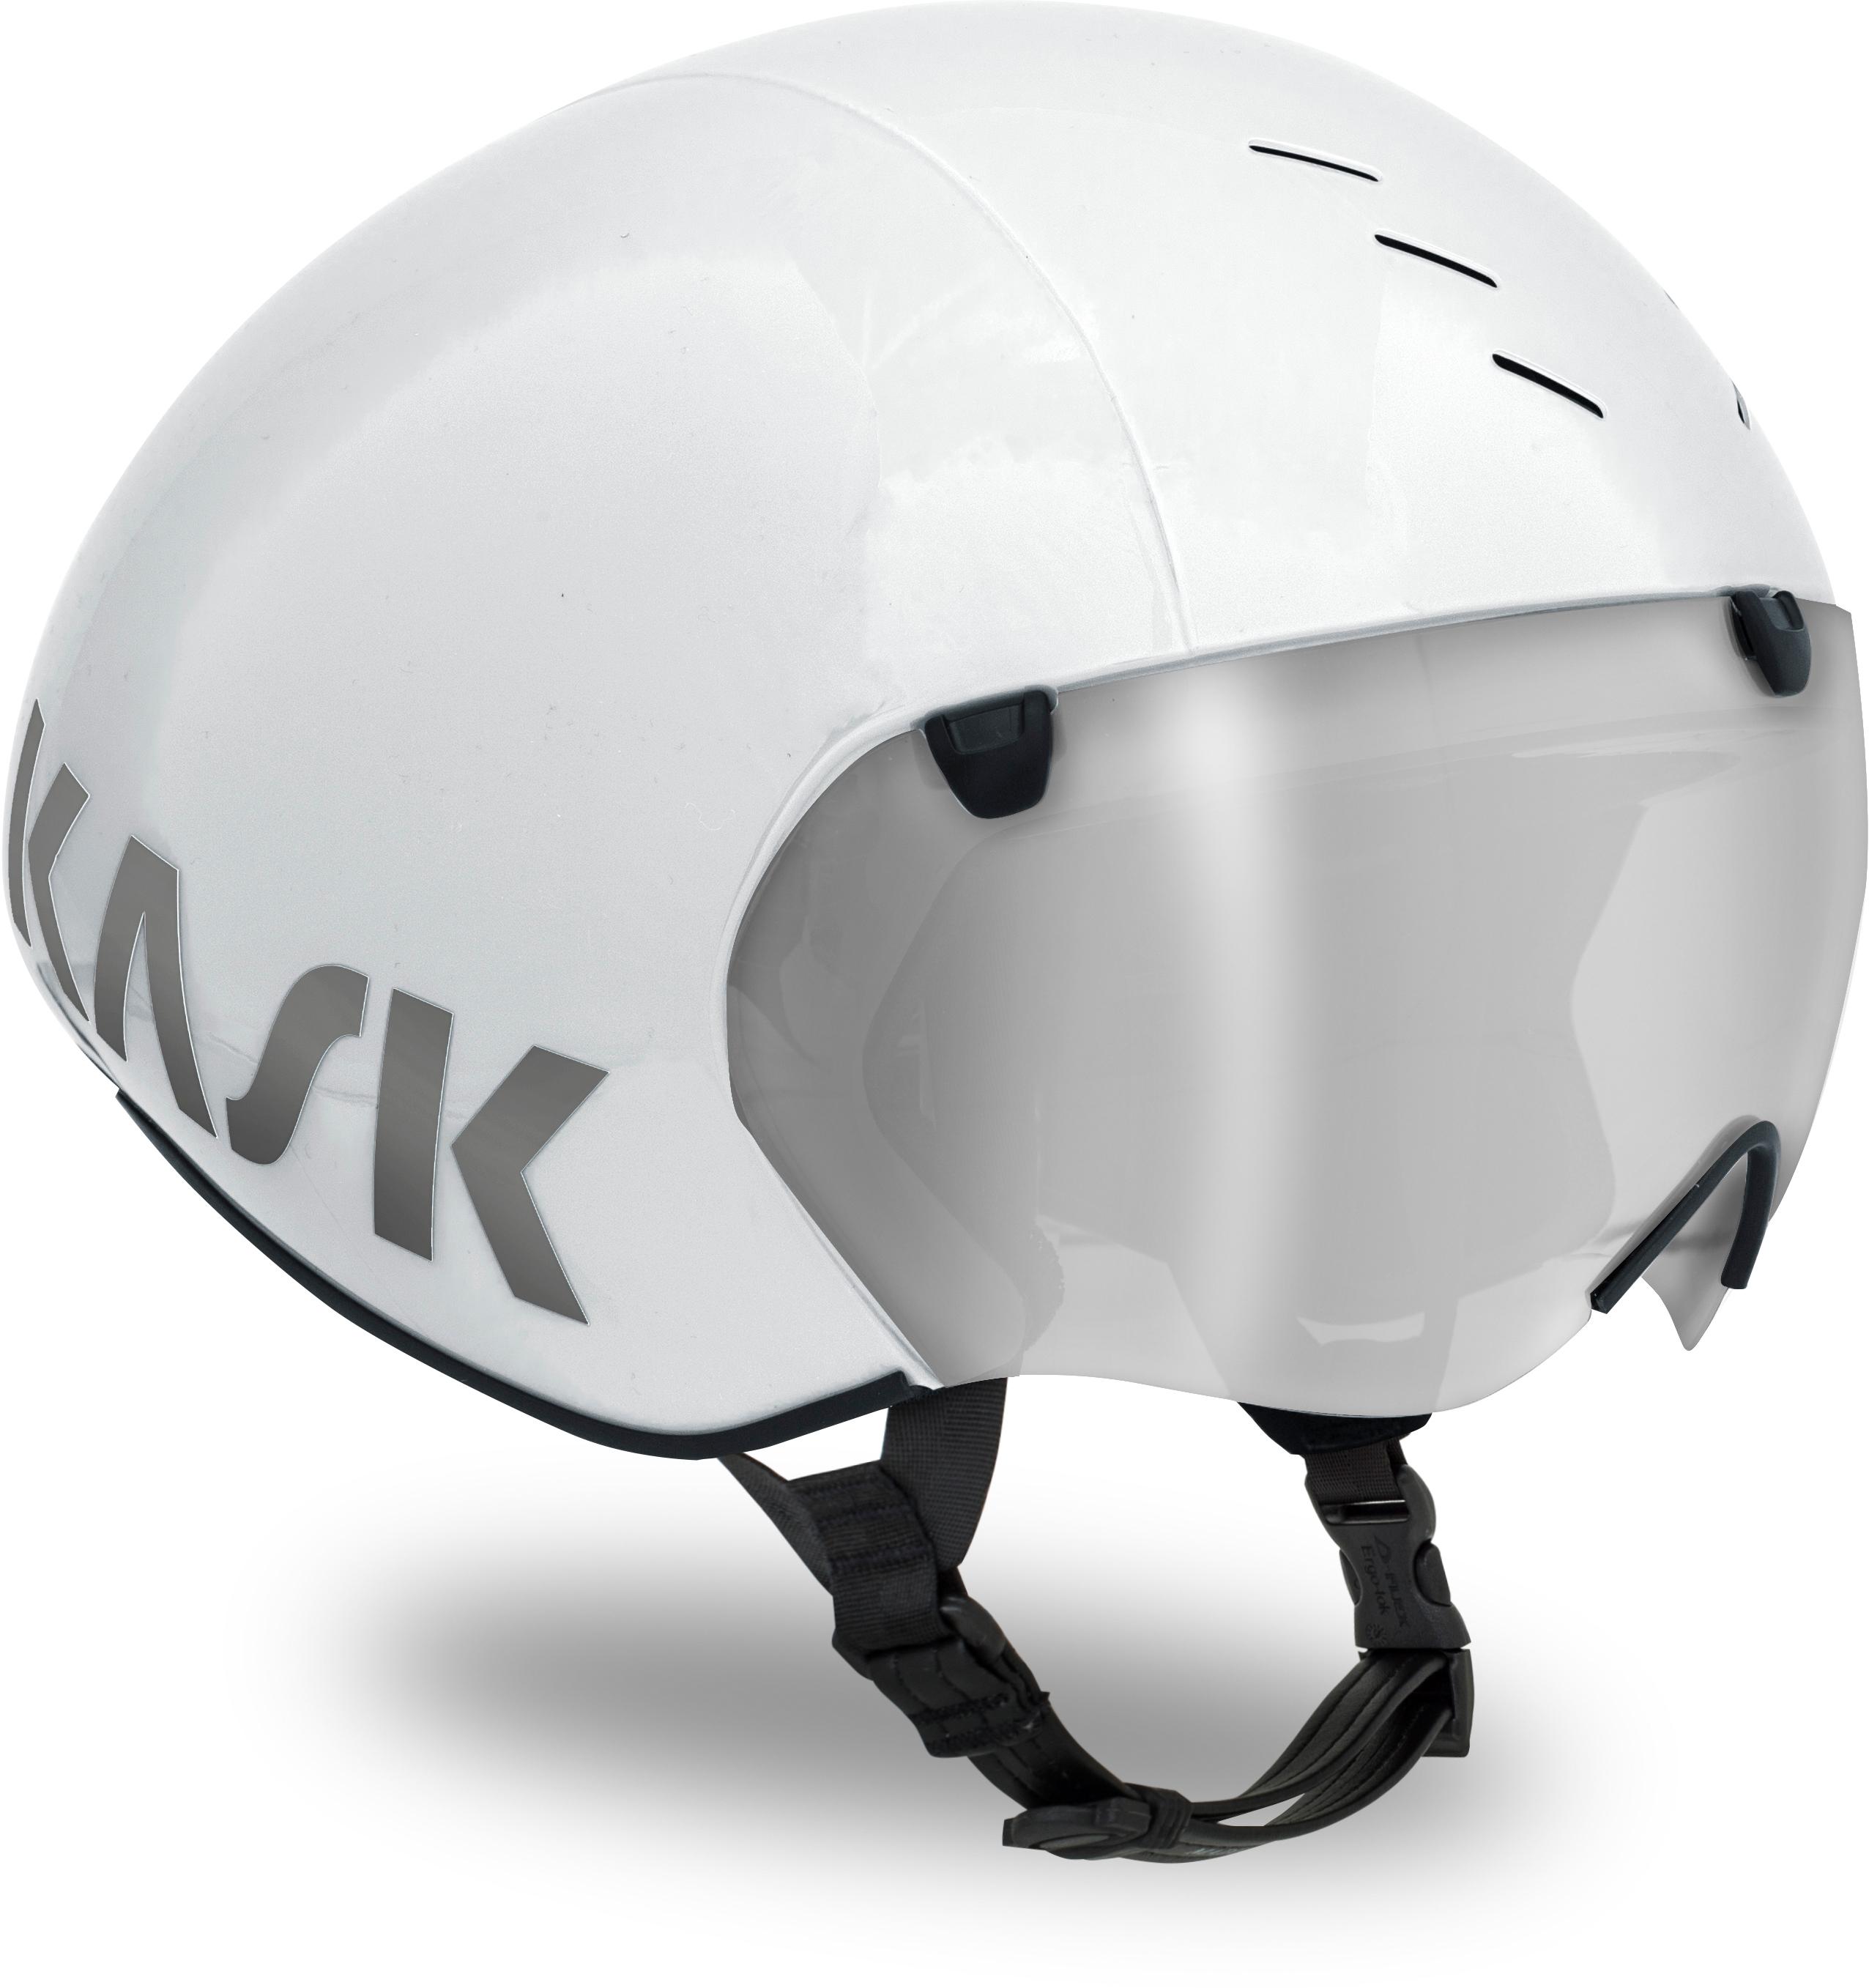 Kask Bambino Pro Tt Helmet White, Large